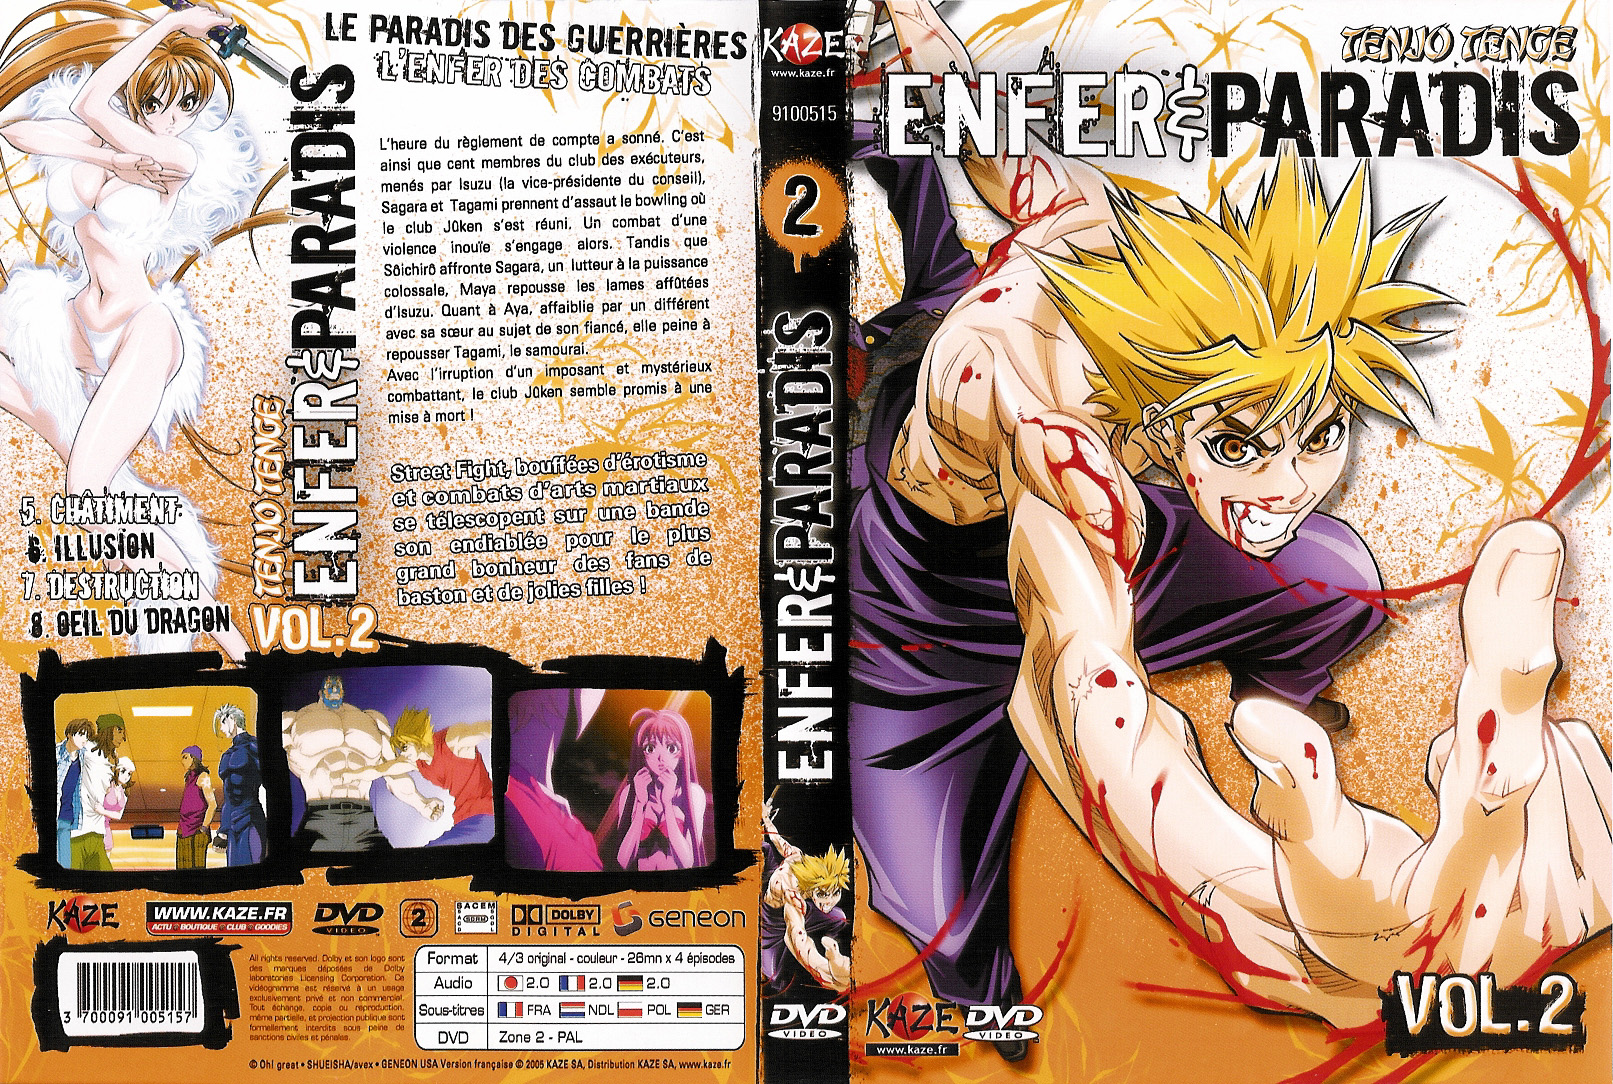 Jaquette DVD Enfer et paradis vol 2